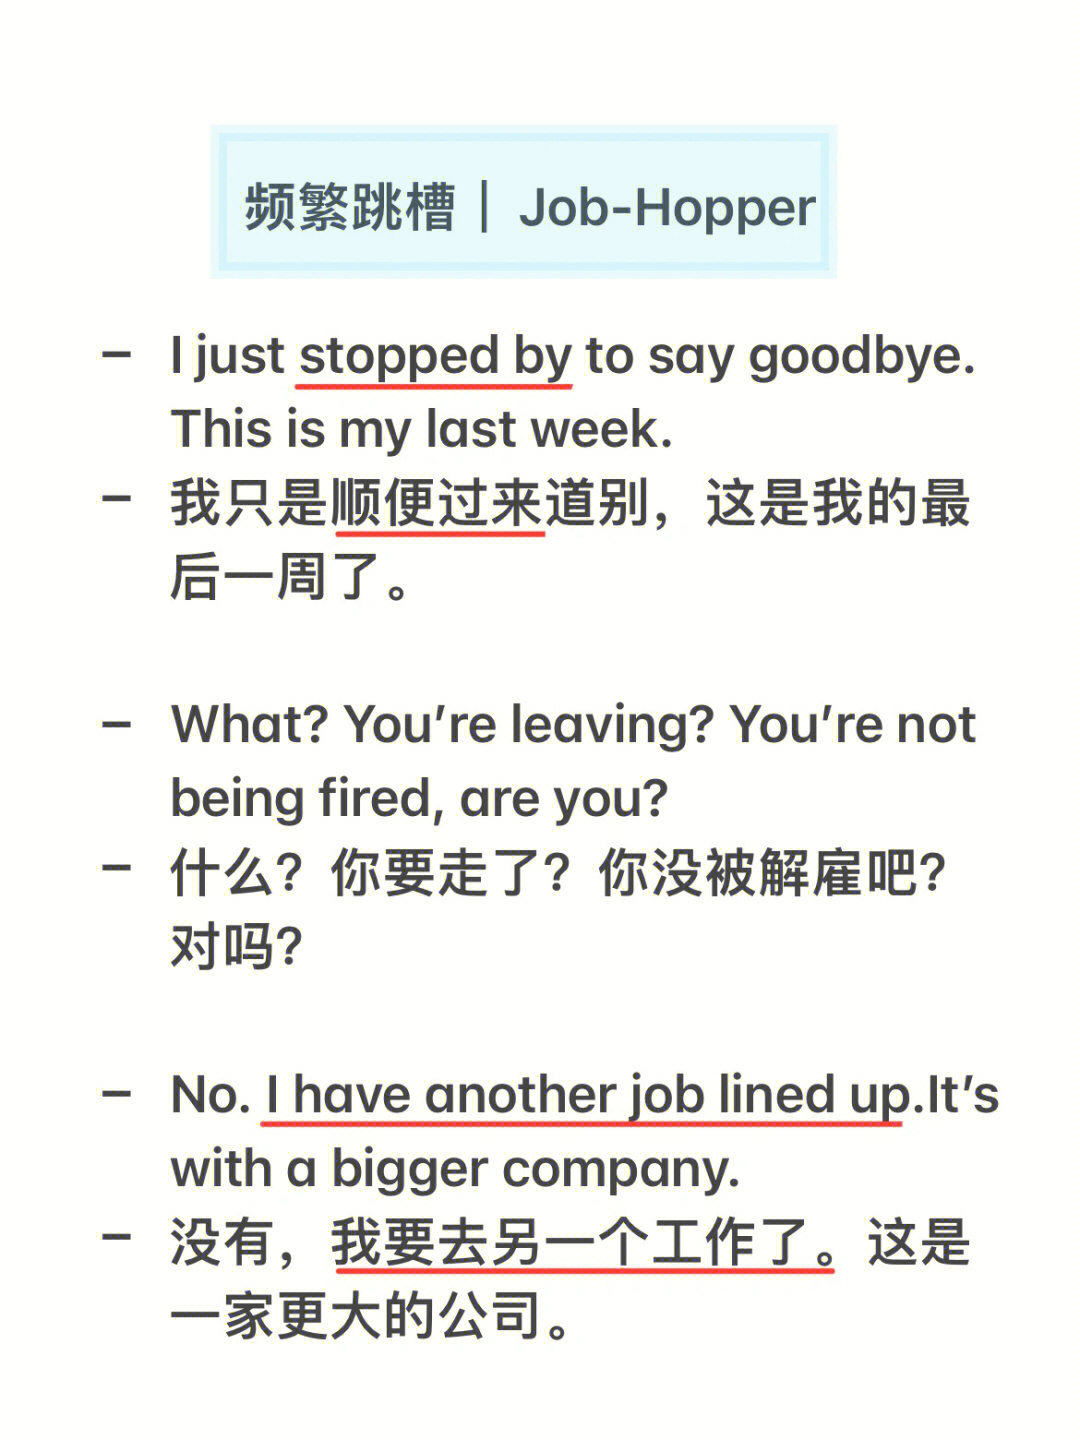 打工人跳槽相关英文jobhopper